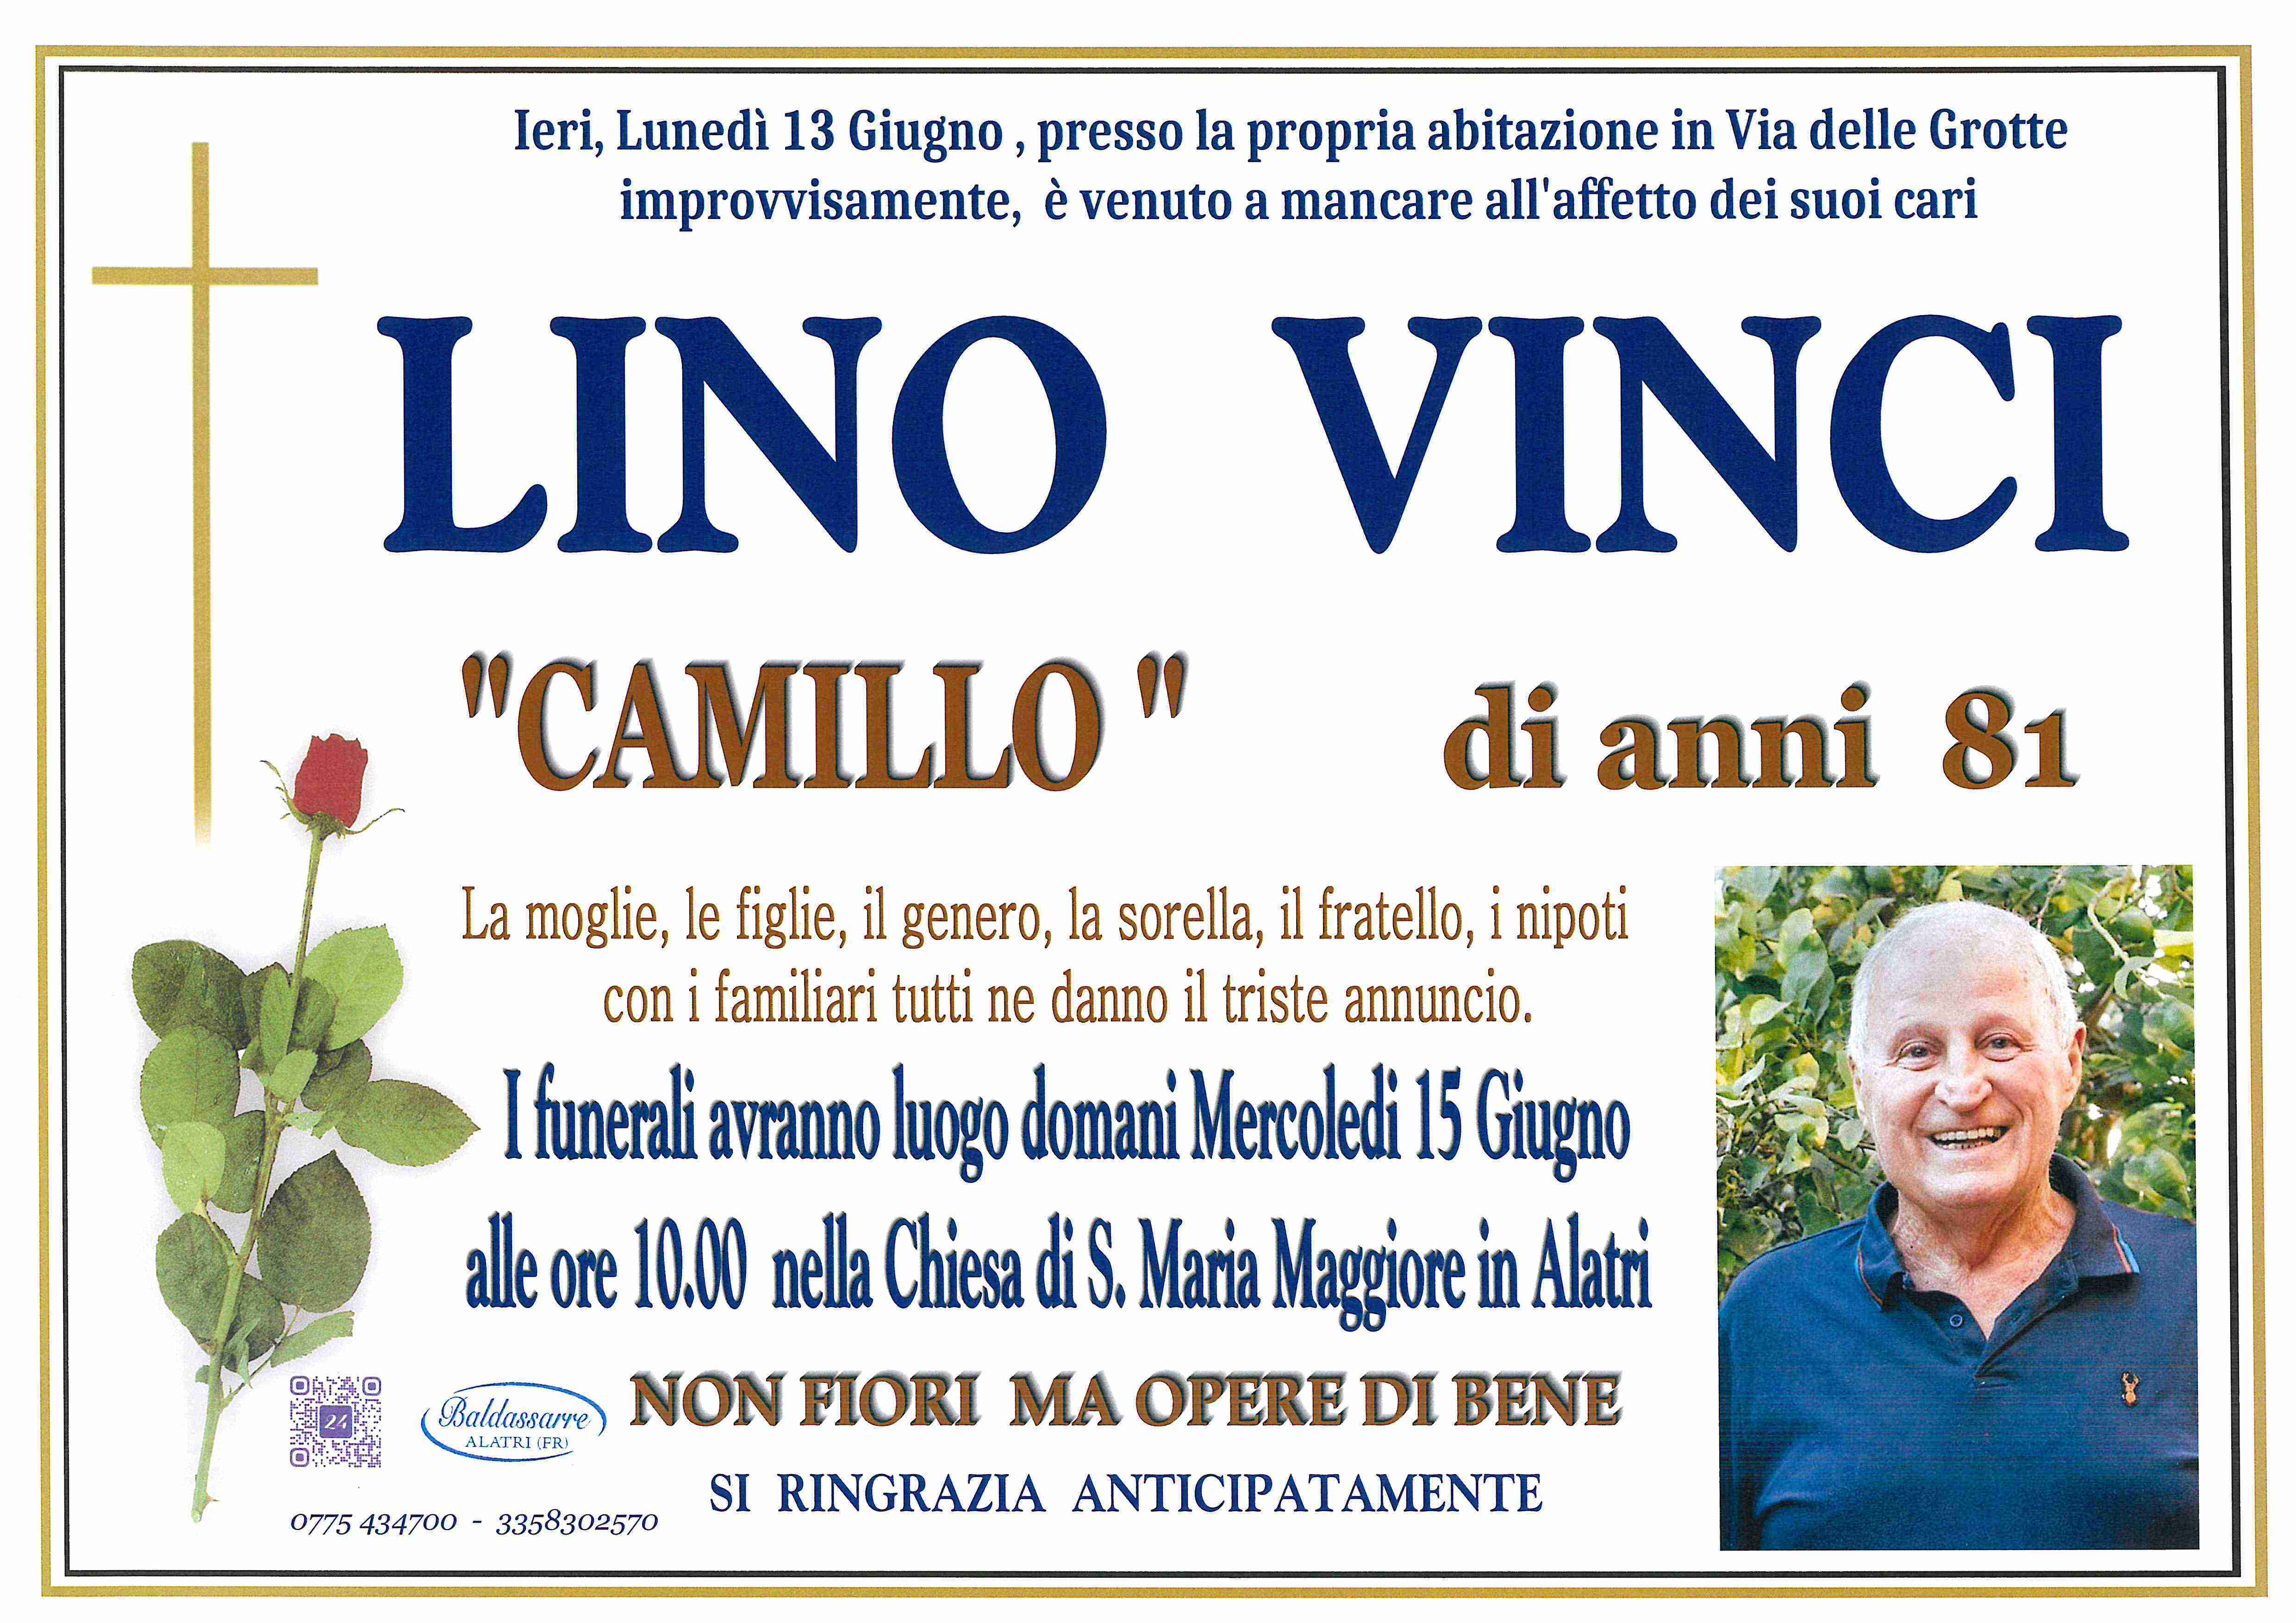 Camillo Vinci